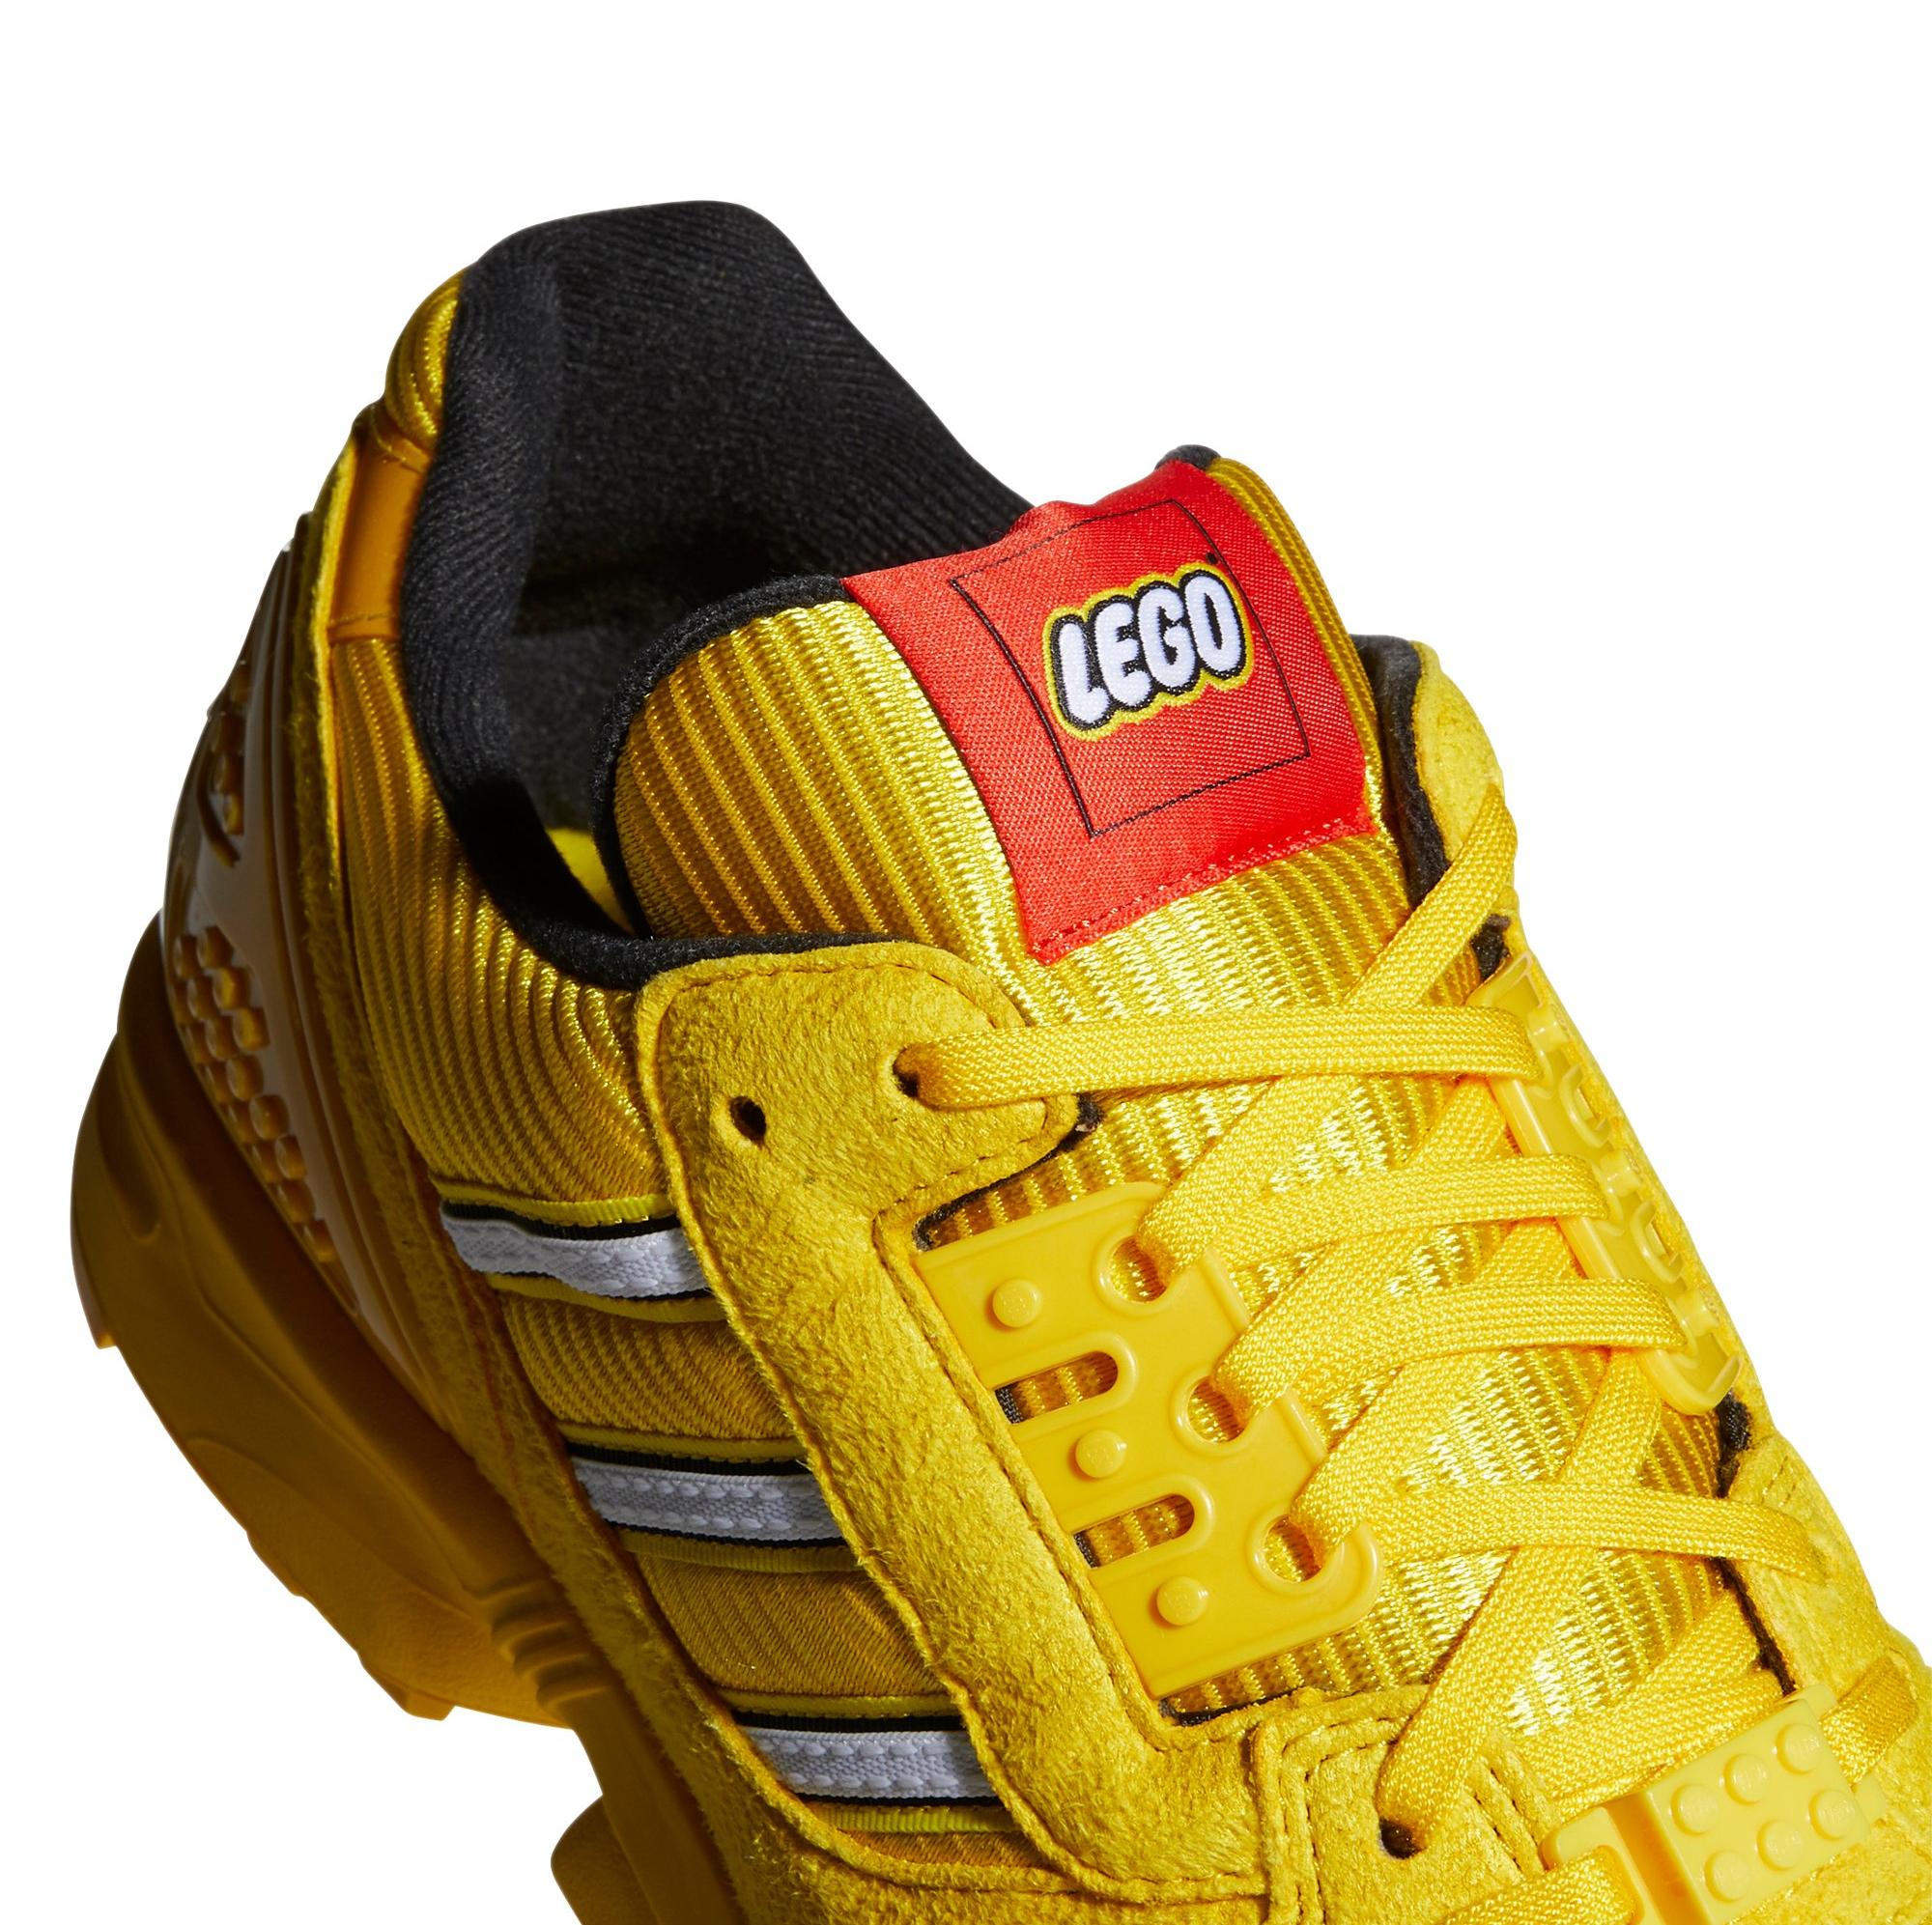 Sneakers Release â adidas ZX 8000 LEGO Multicolor Menâs Shoe